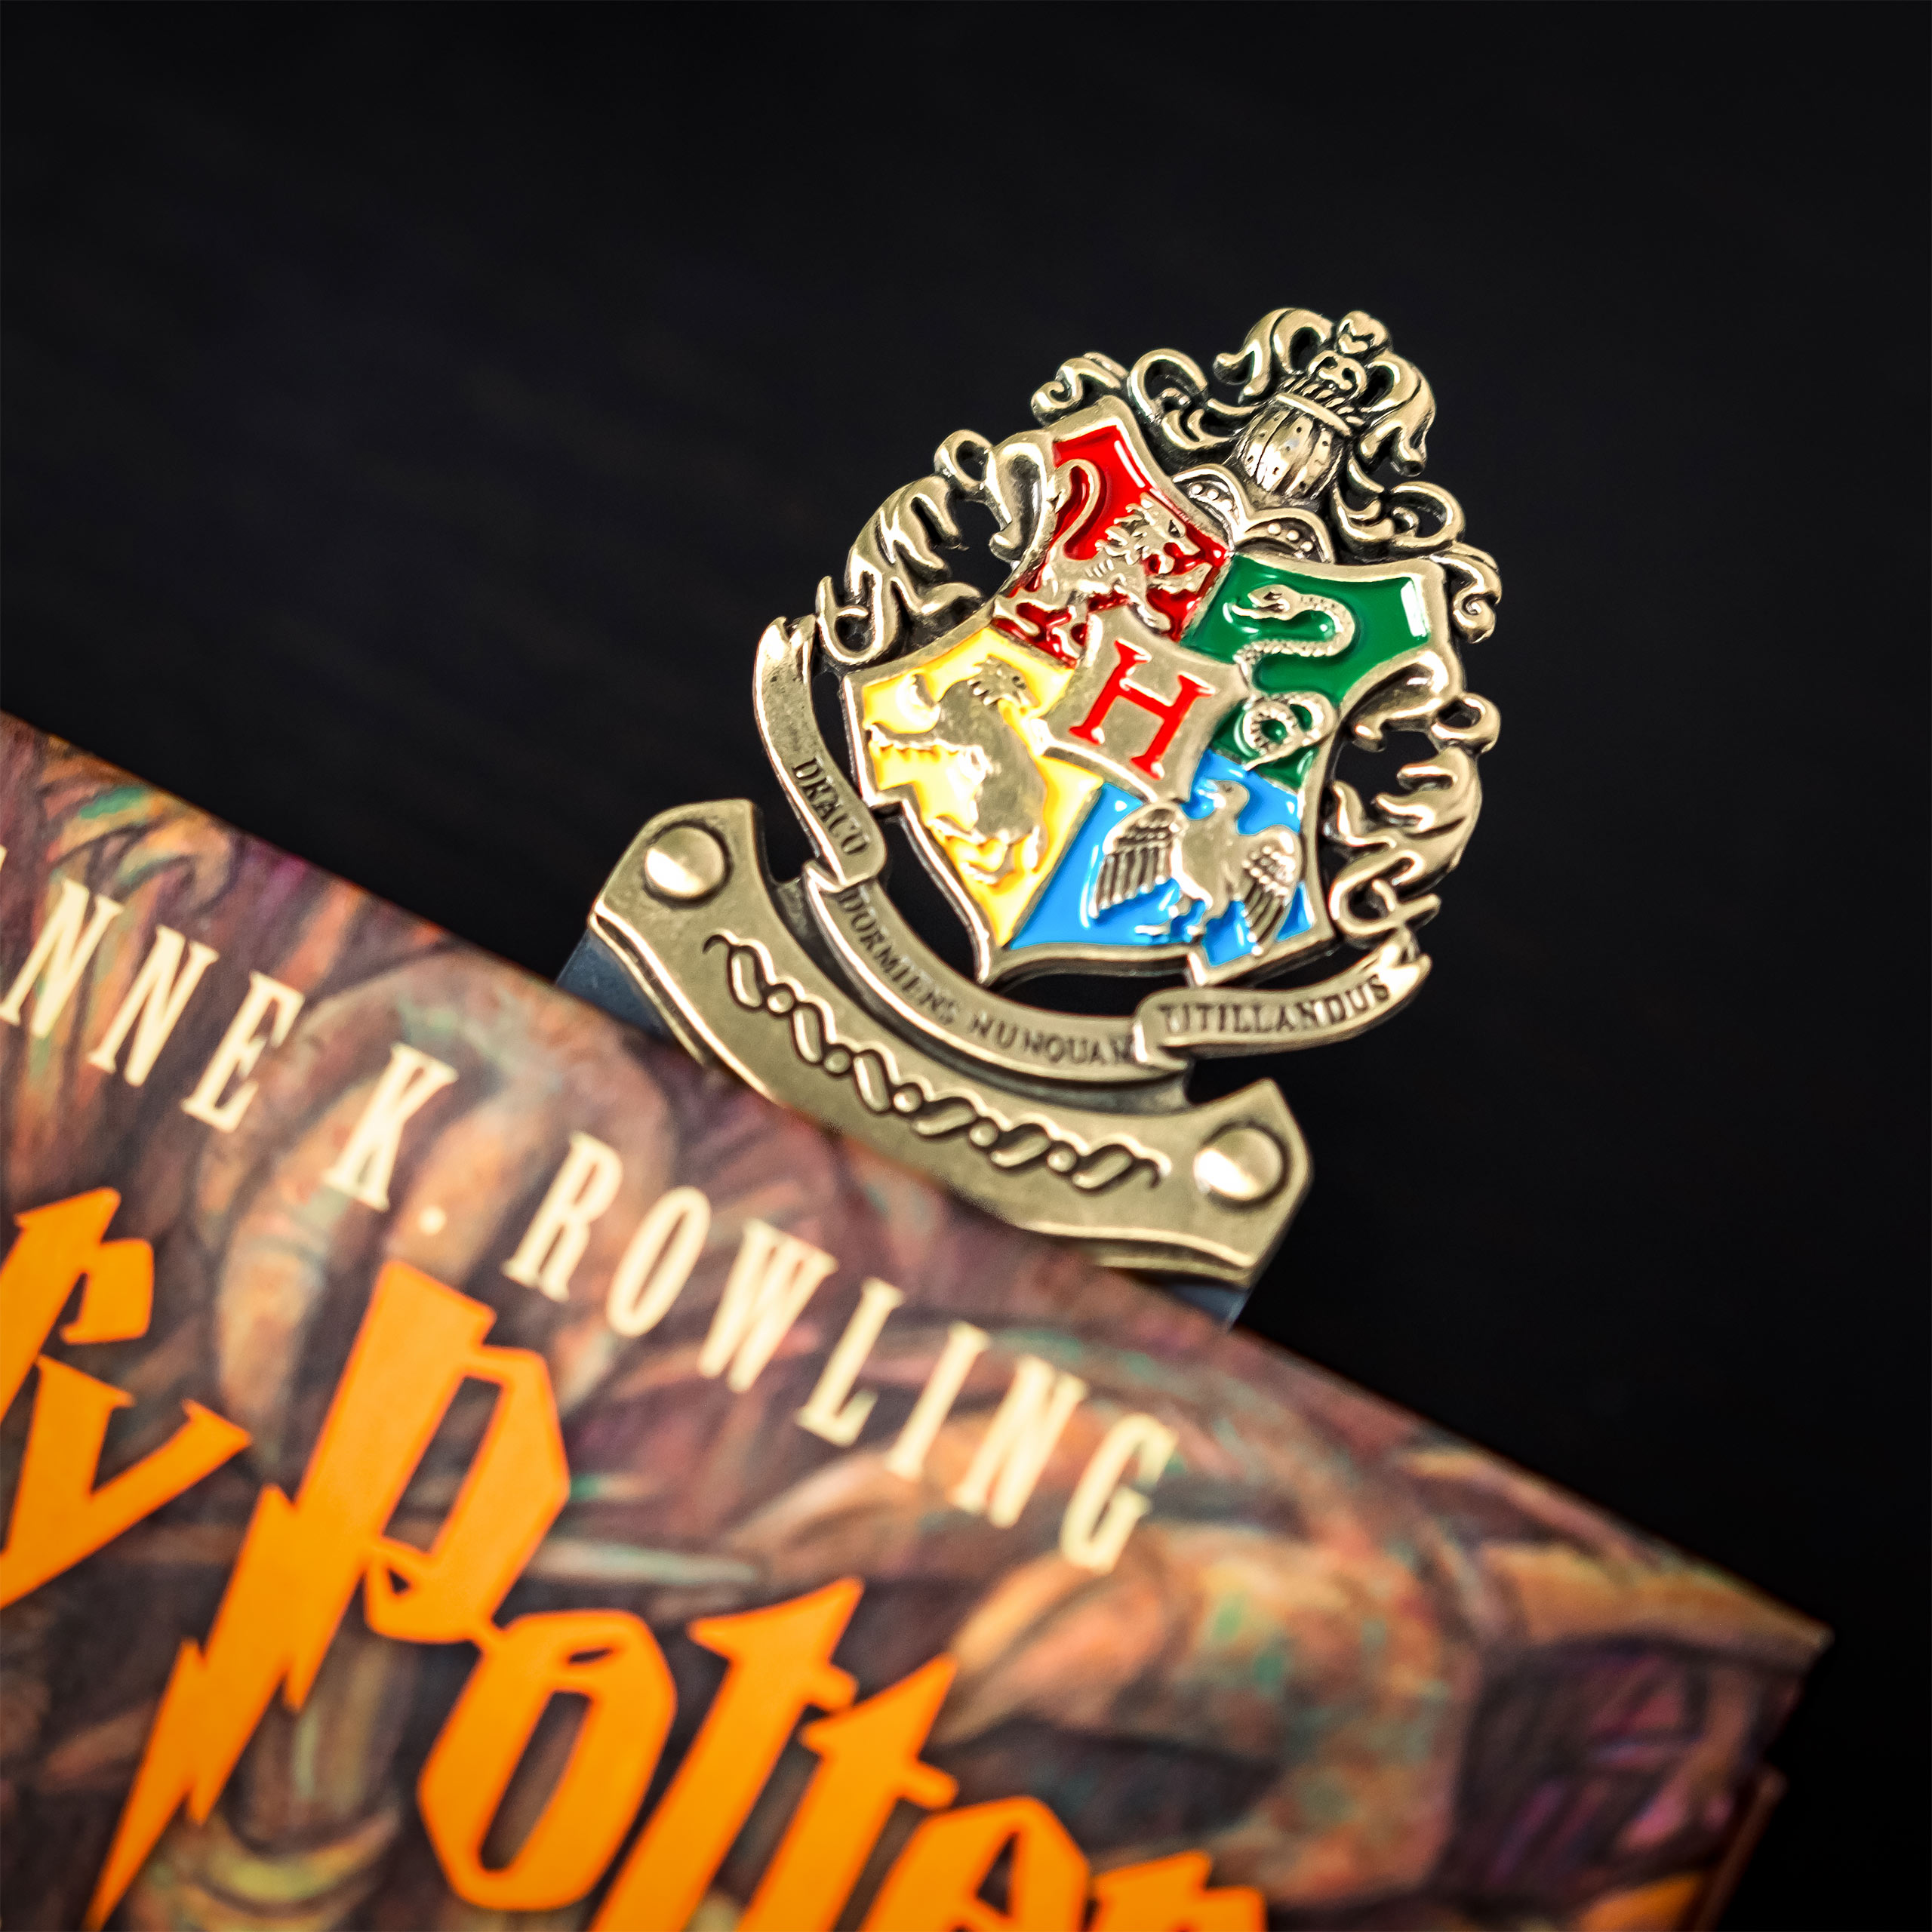 Harry Potter - Collection de marque-pages de l'emblème de la maison de Hogwarts